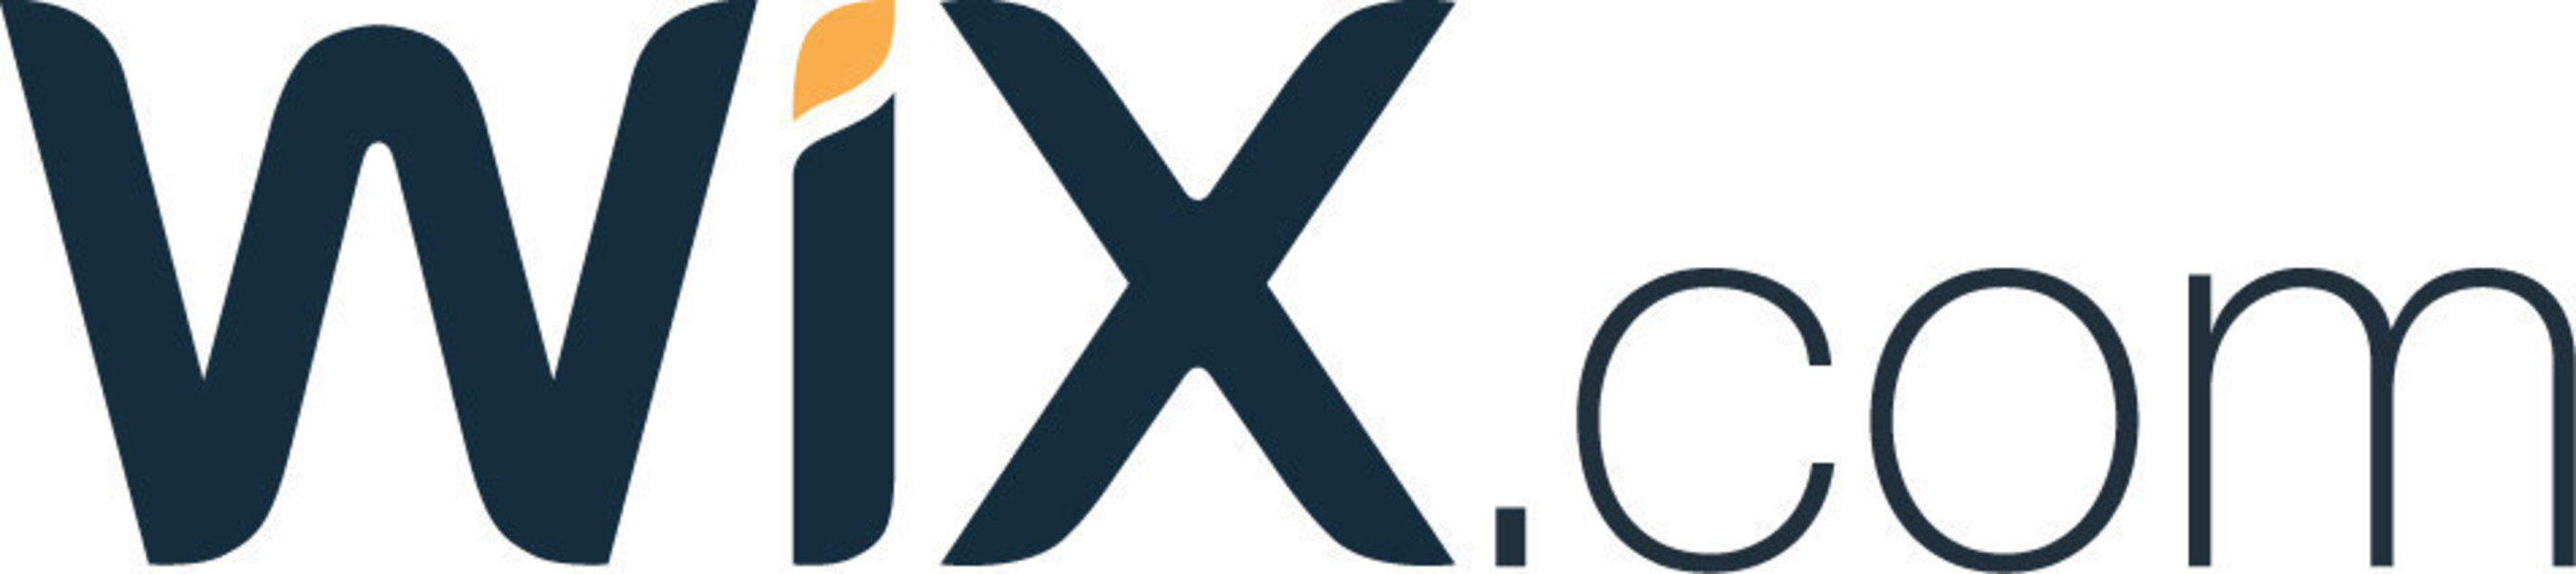 Wix.com Ltd. (Nasdaq: WIX)